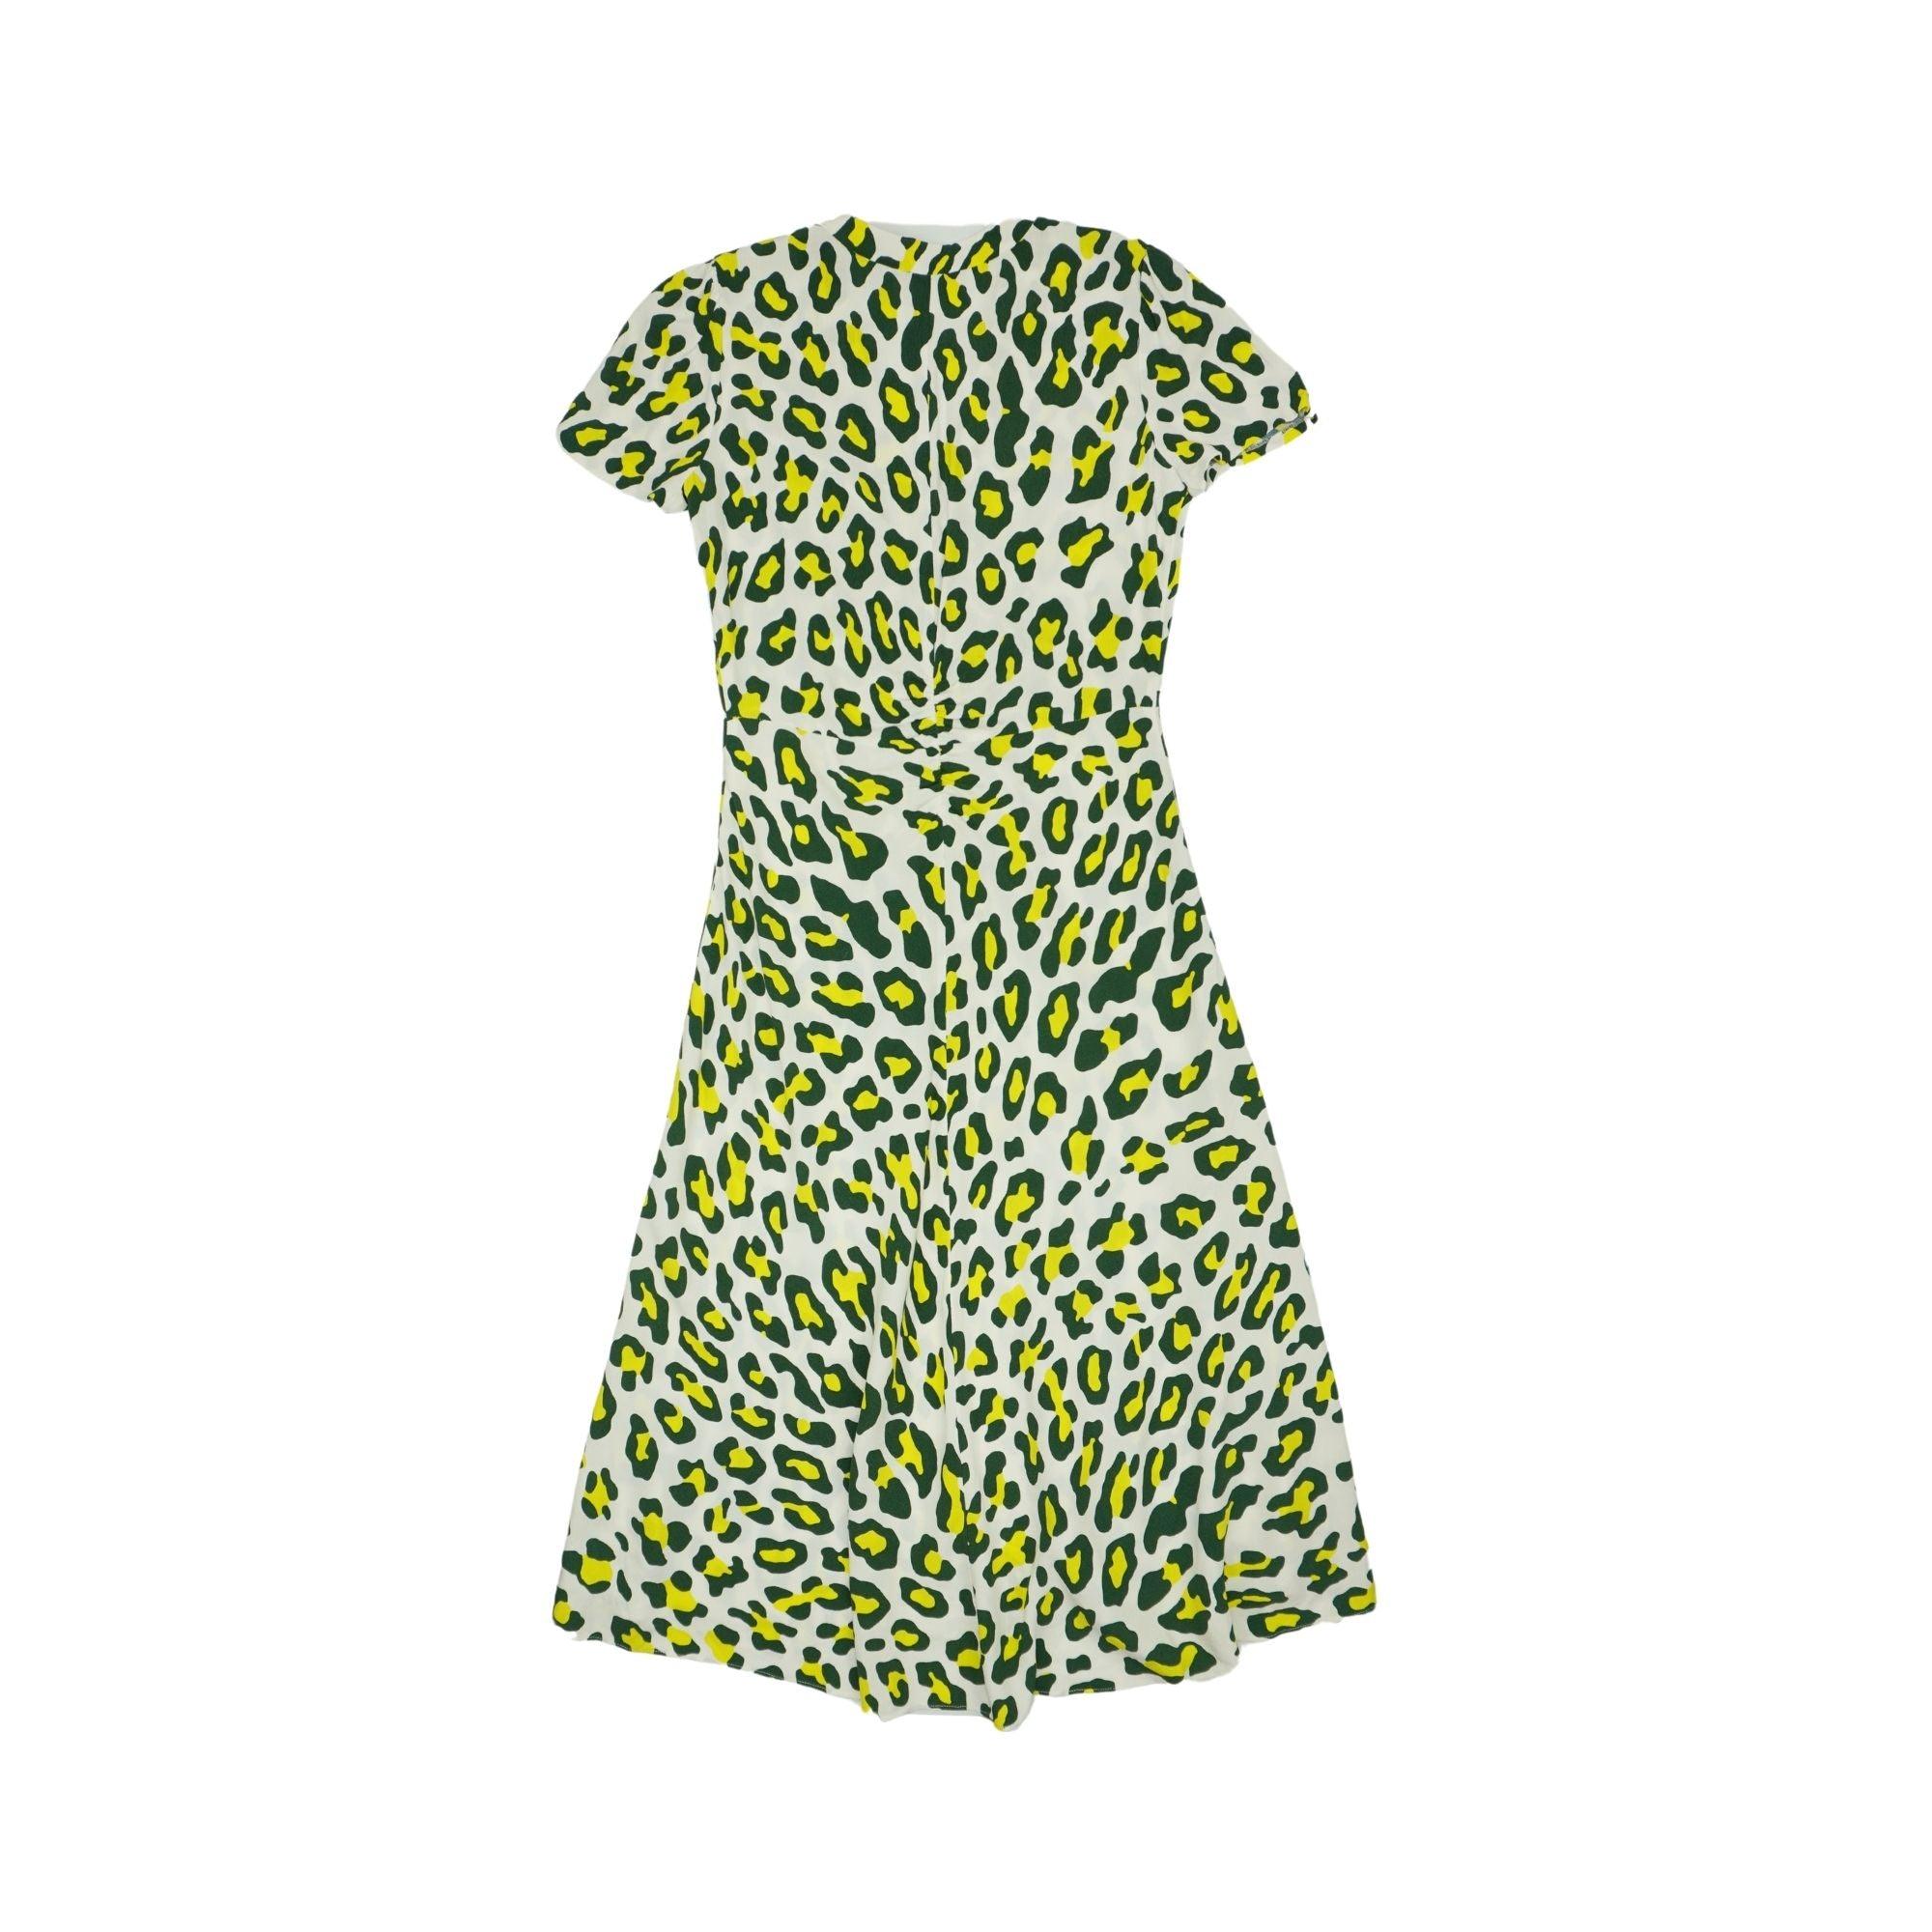 Diane Von Furstenberg Dress - Women's XS - Fashionably Yours